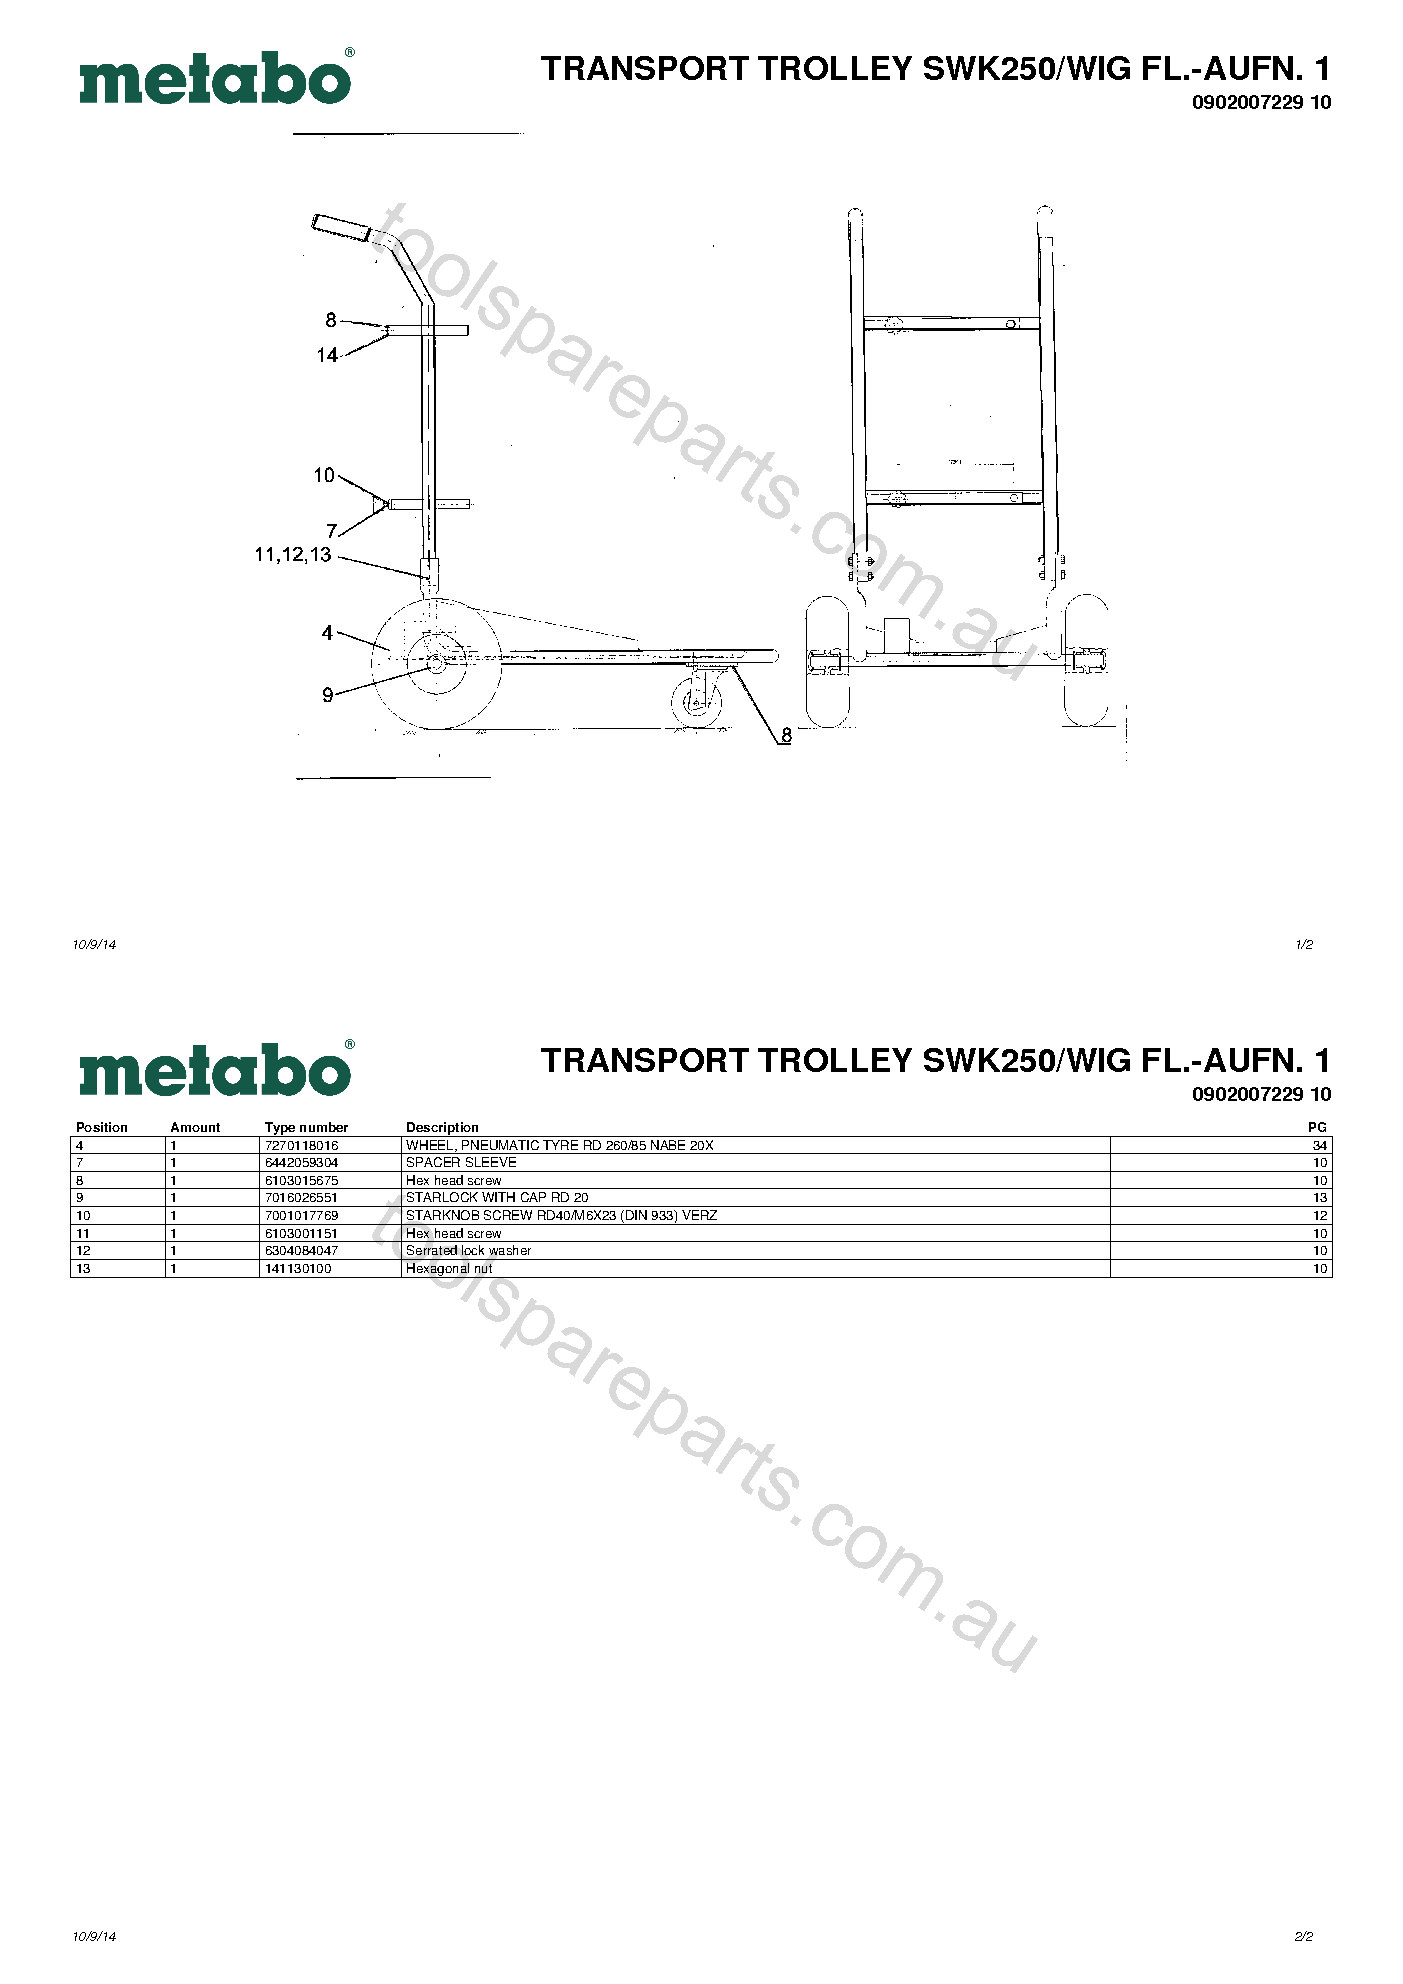 Metabo TRANSPORT TROLLEY SWK250/WIG FL.-AUFN. 1 0902007229 10  Diagram 1